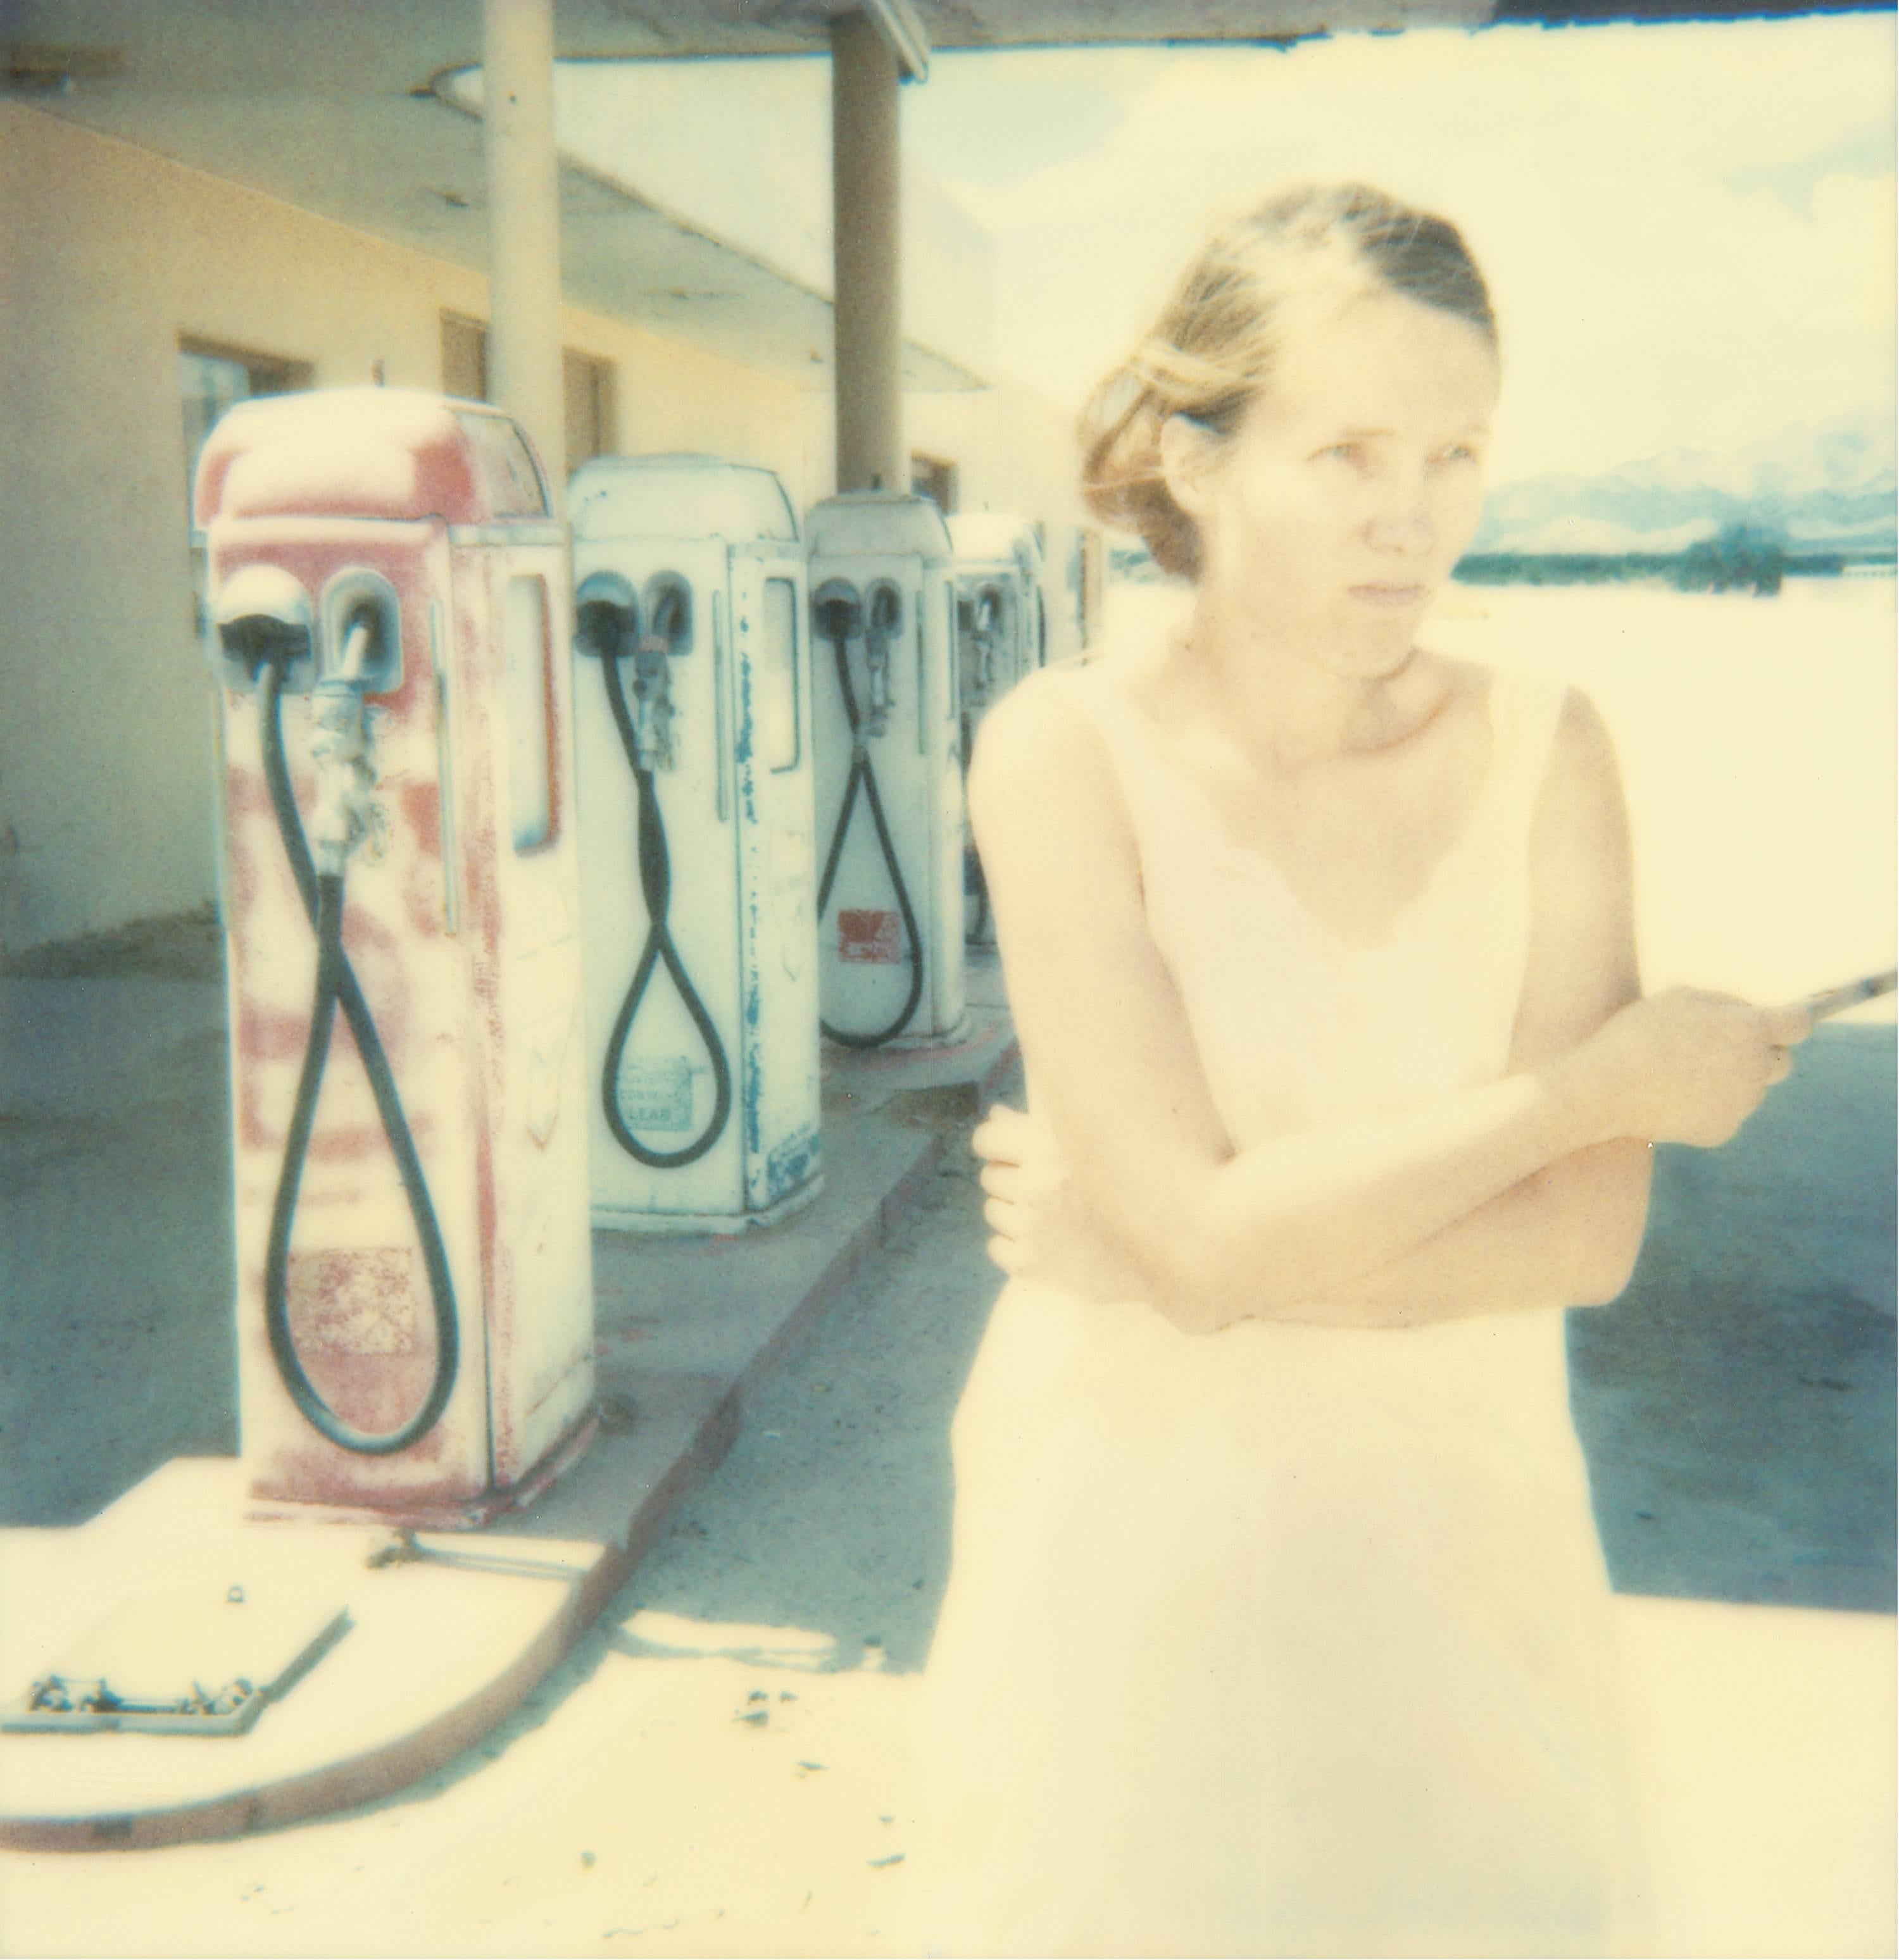 Gasstation (Triptychon) - Polaroid, Contemporary, 21. Jahrhundert, Farbe, Porträt – Photograph von Stefanie Schneider